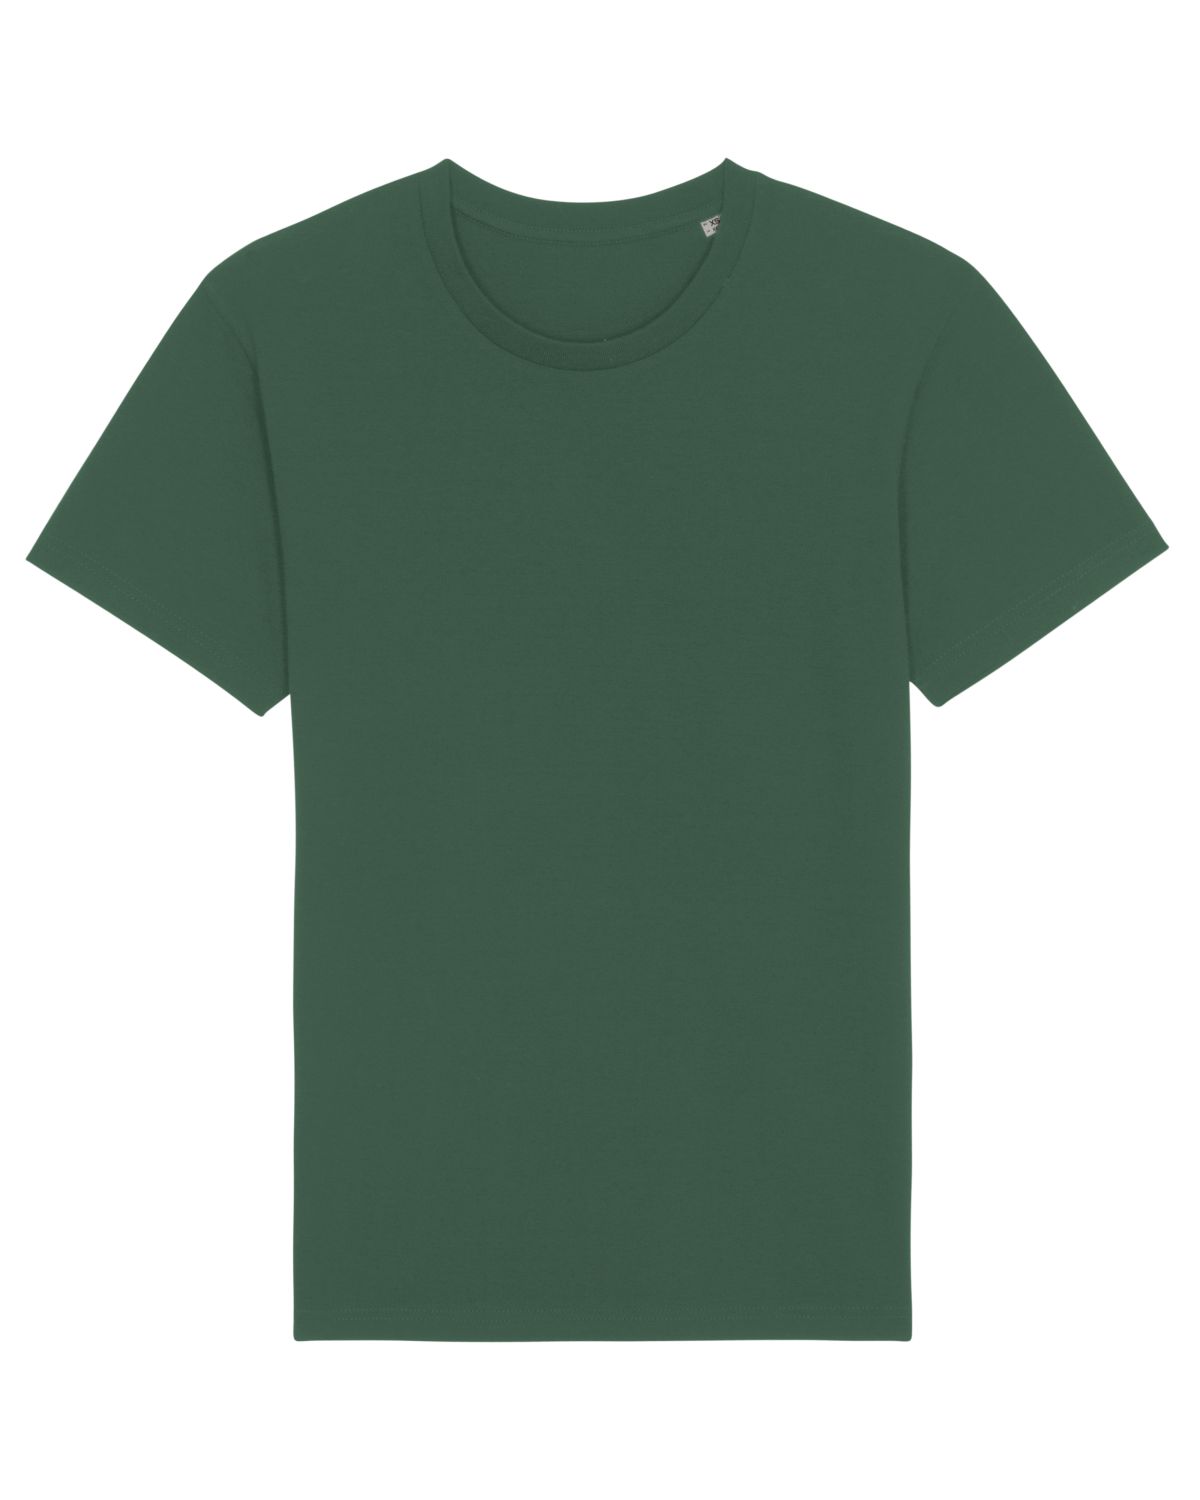 Stanley/Stella's - Rocker T-shirt - Bottle Green